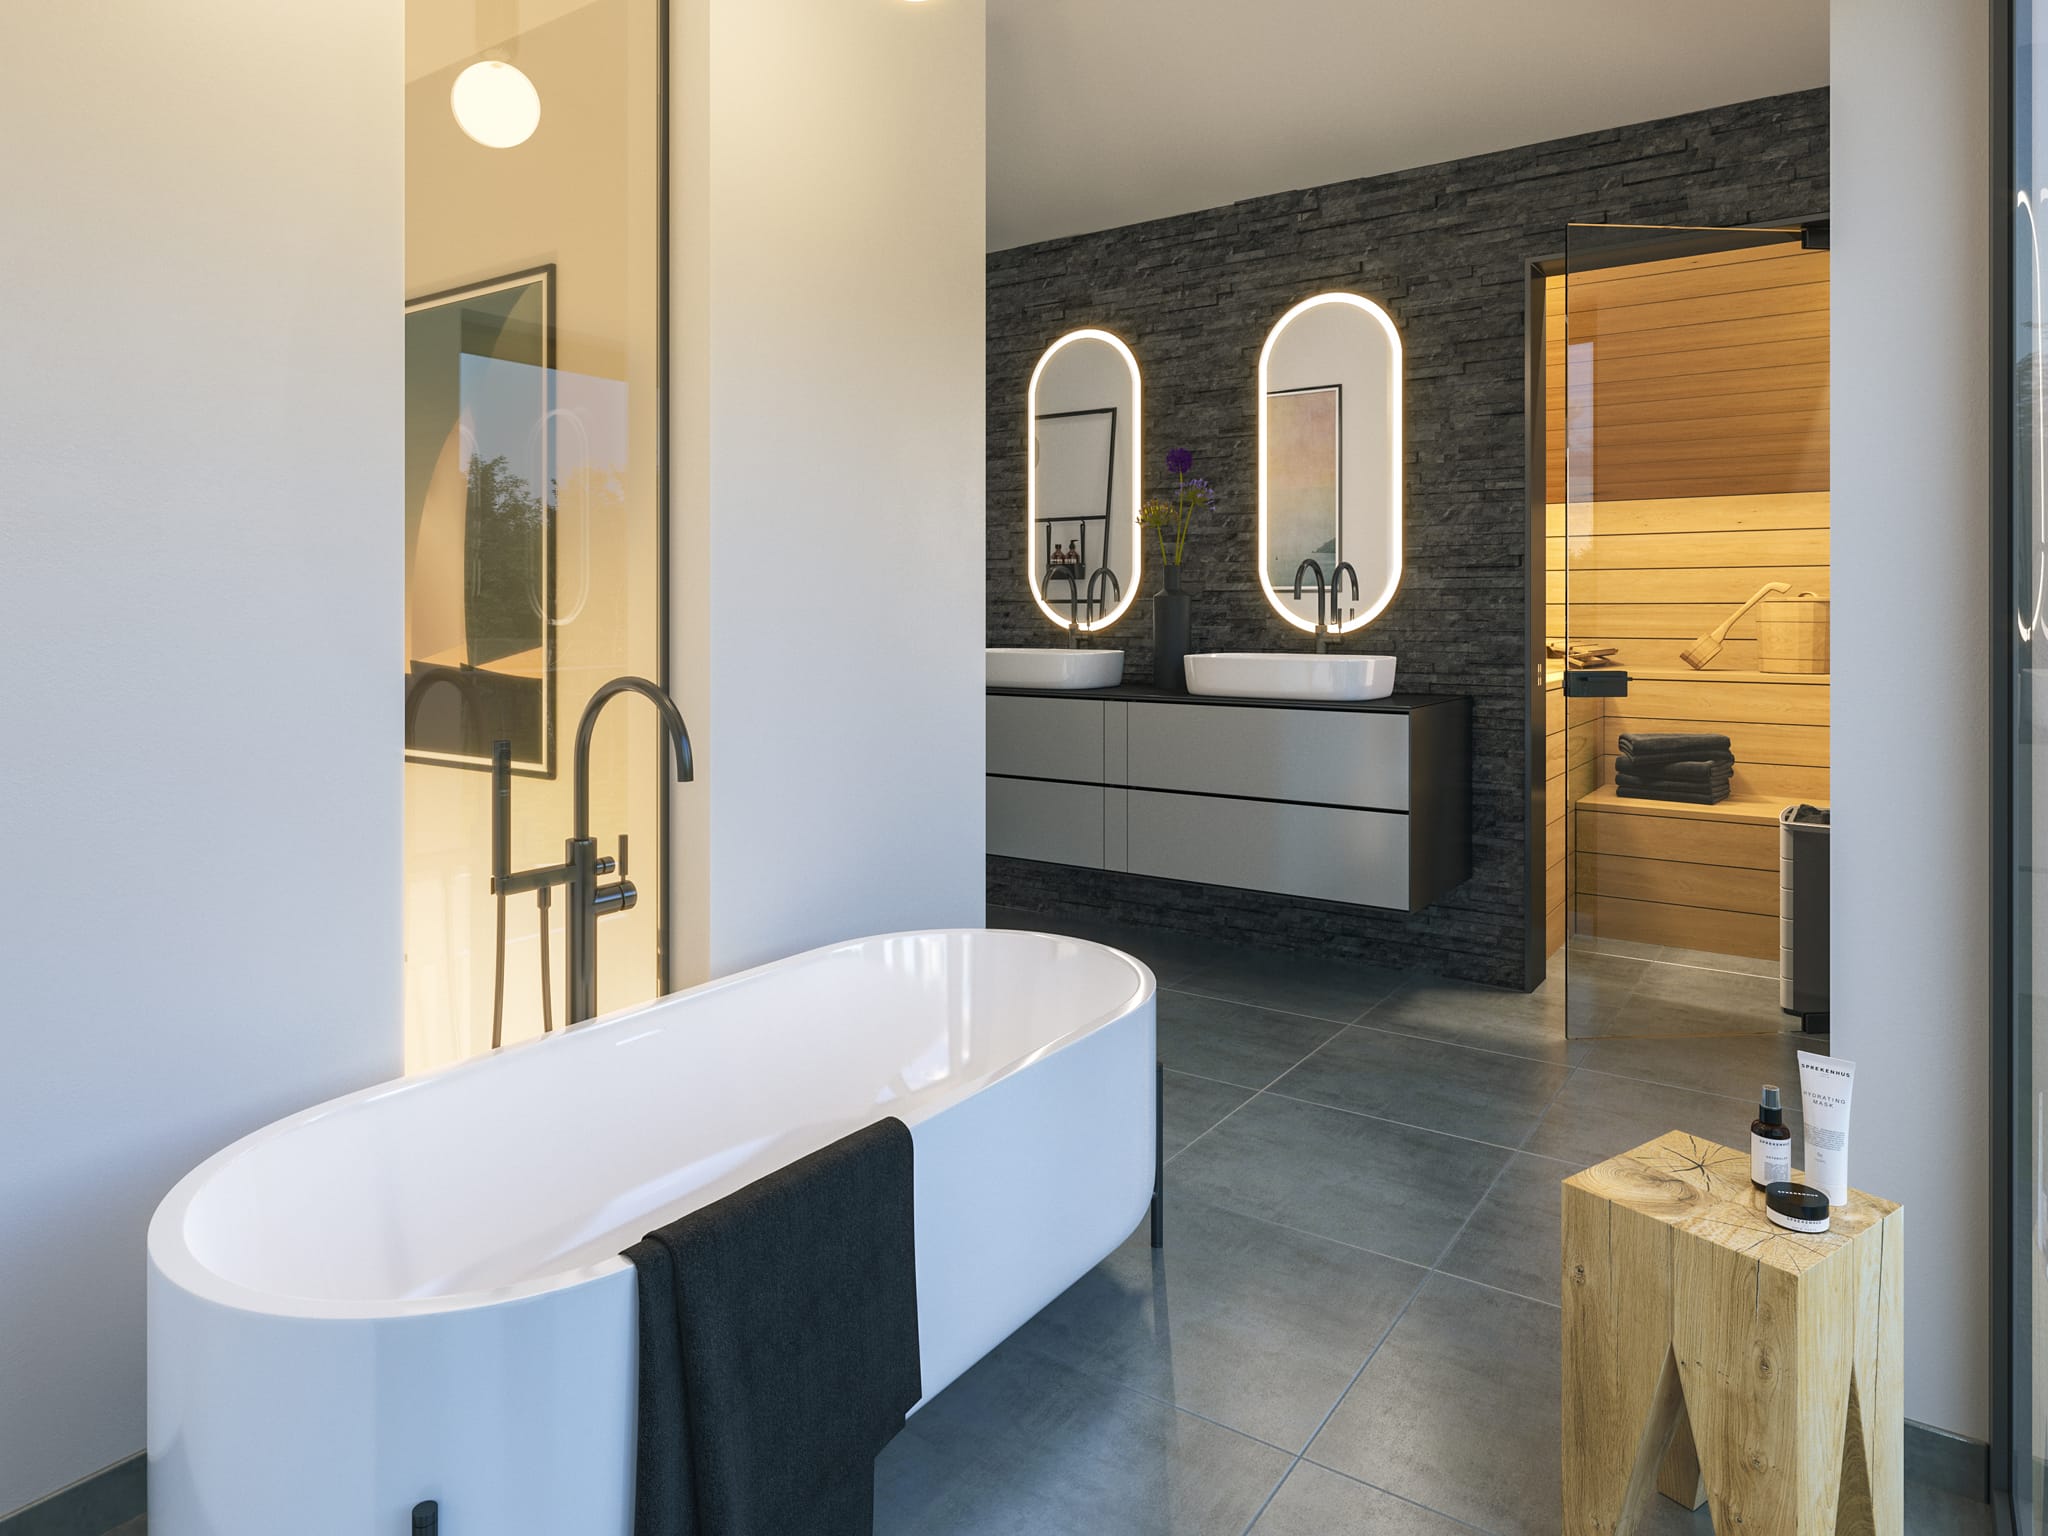 Modernes Badezimmer mit Sauna & freistehender Badewanne - Ideen Haus Design innen Bien-Zenker Fertighaus CONCEPT-M 163 Dresden - HausbauDirekt.de